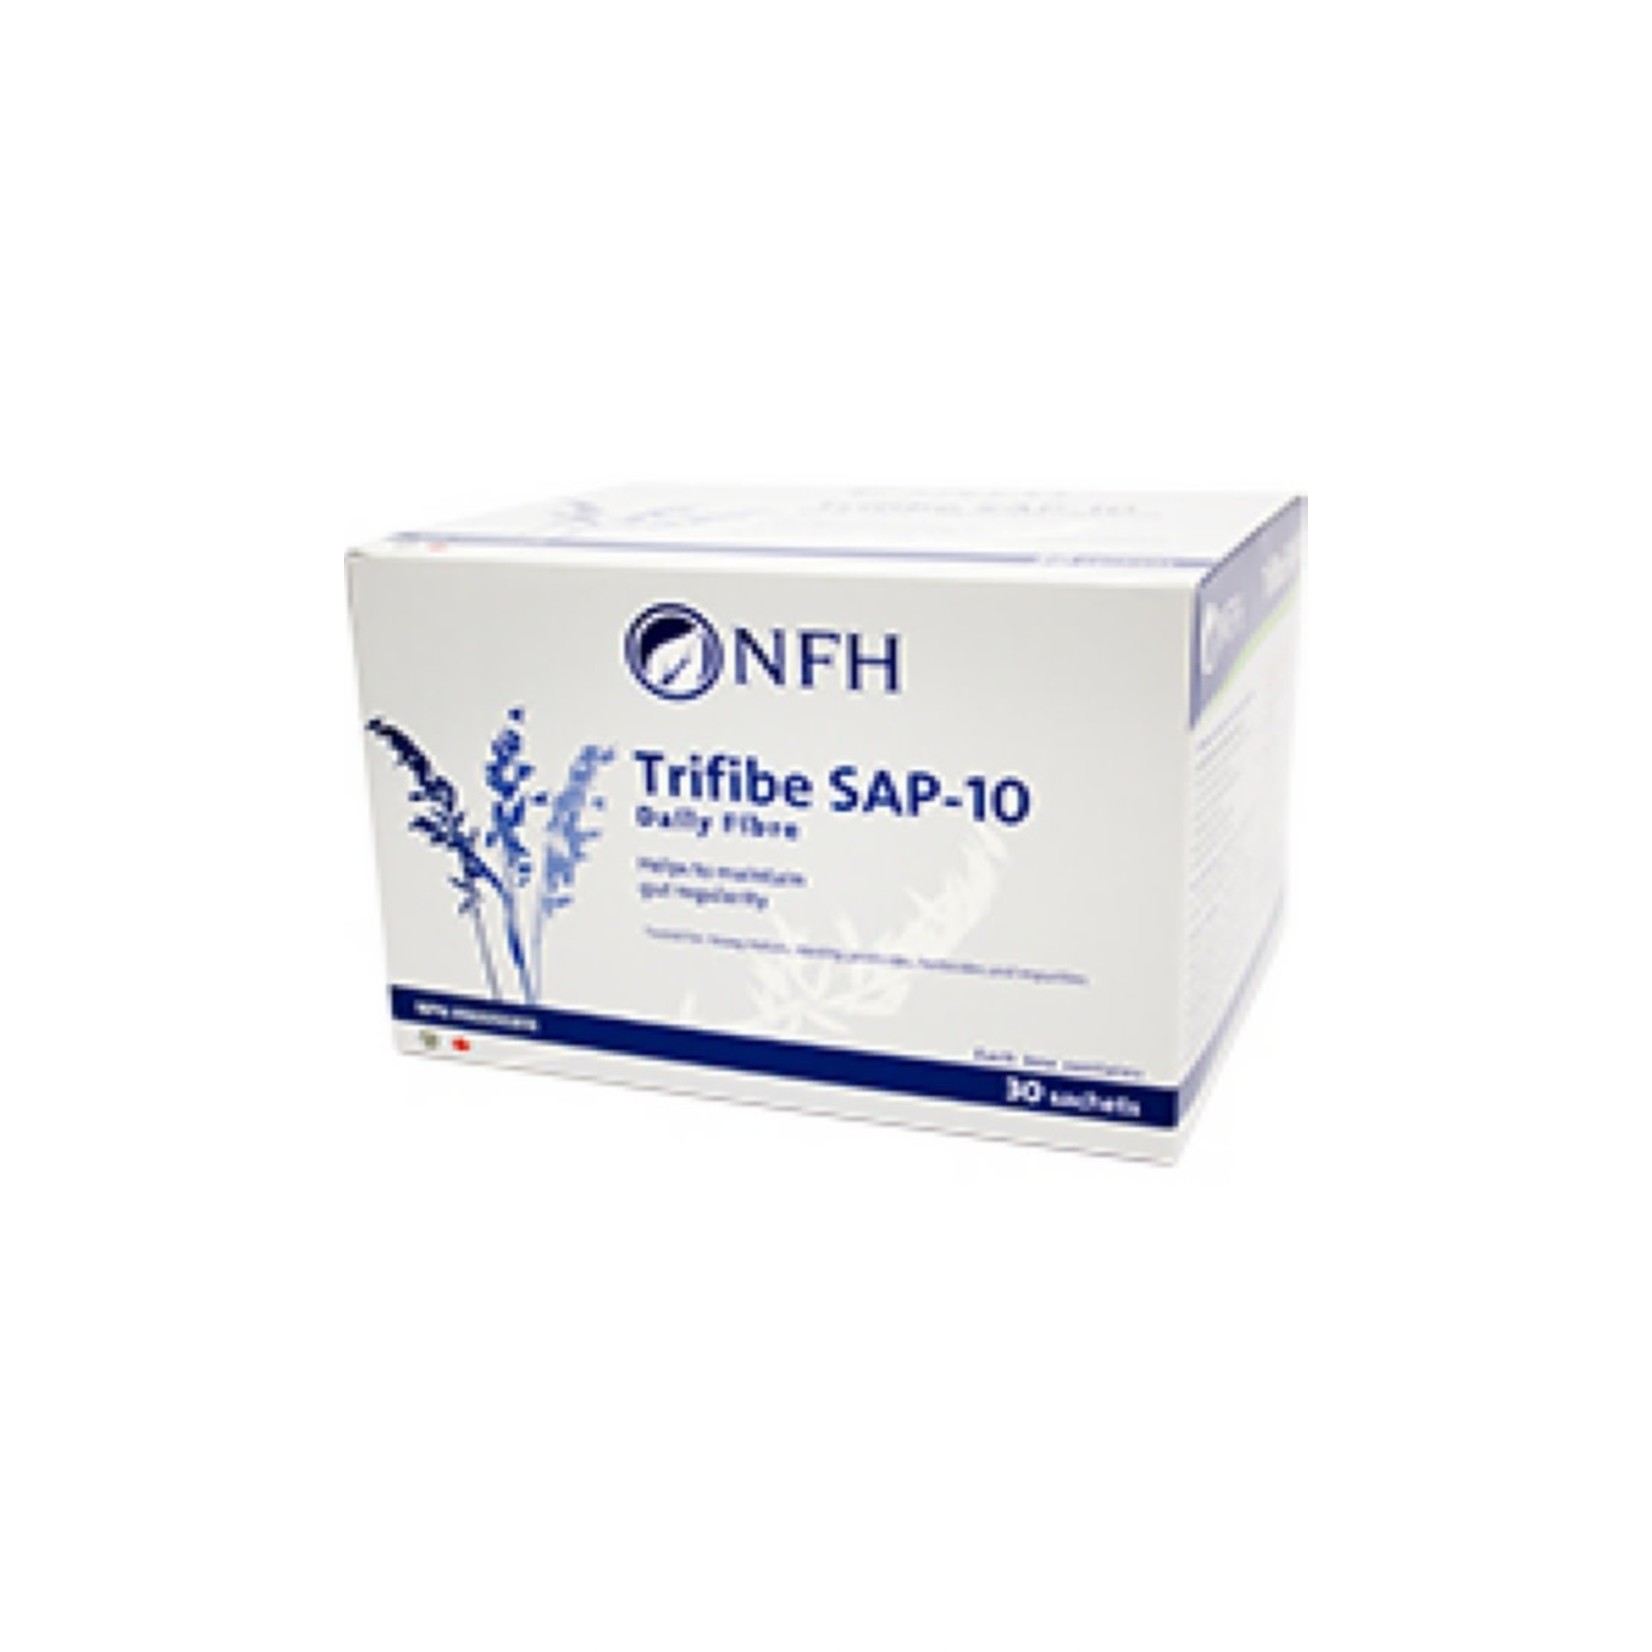 NFH NFH TRIFIBE SAP-340G